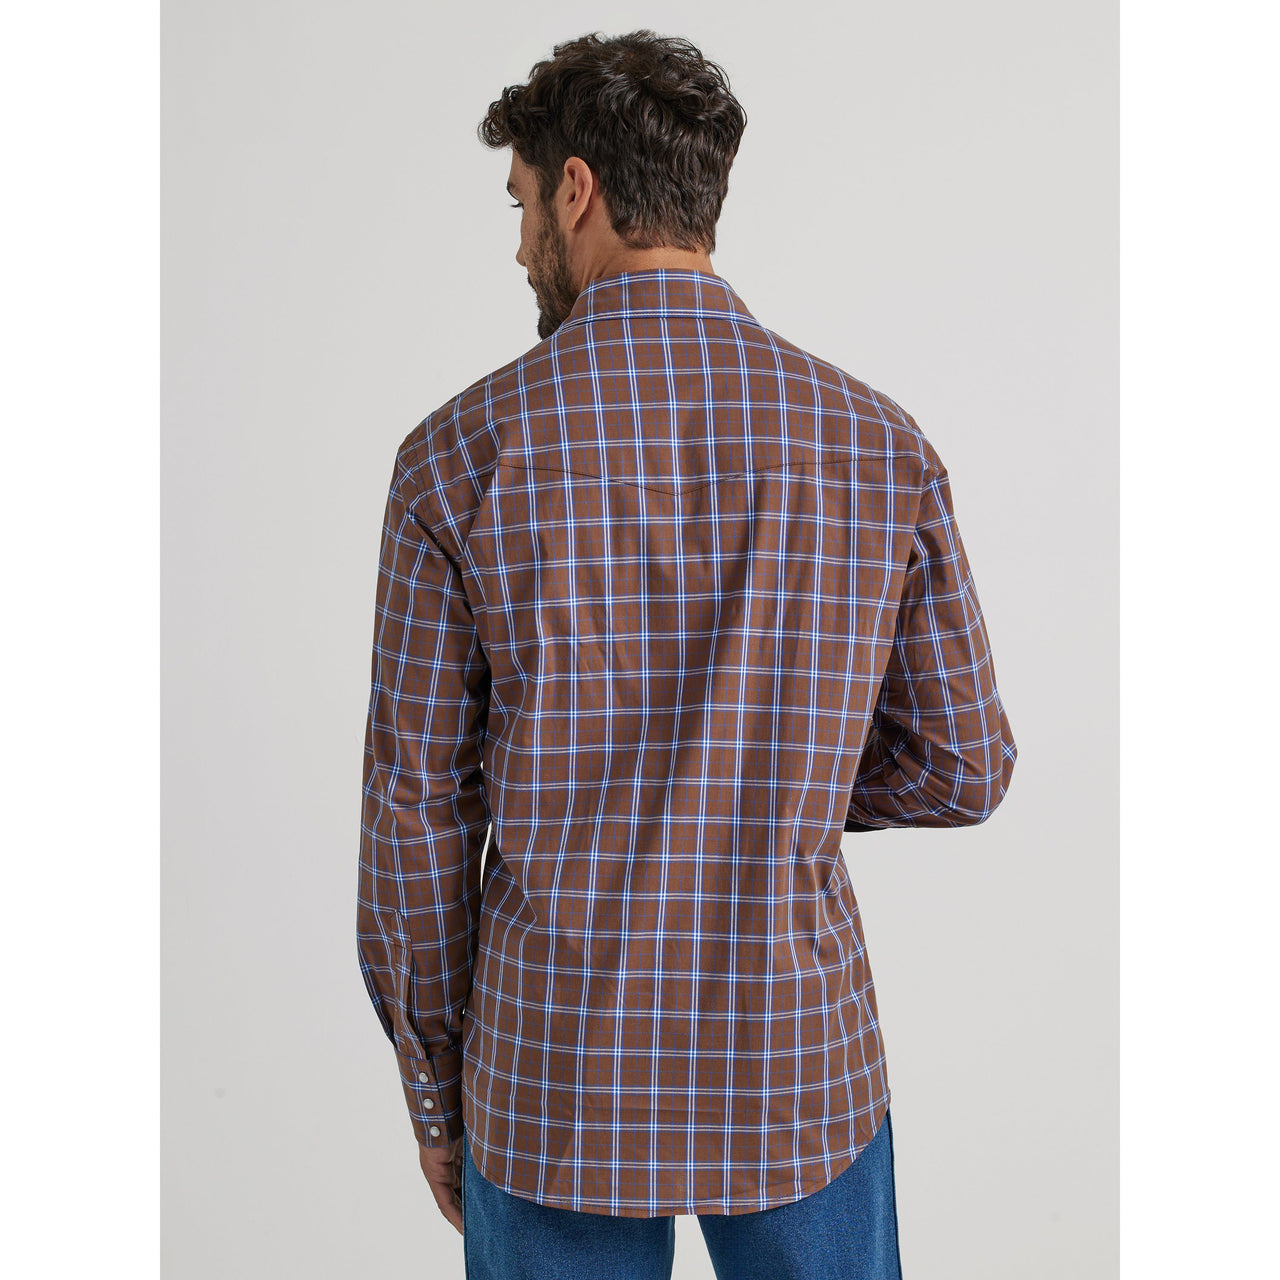 Wrangler Men's Wrinkle Resist Long Sleeve Shirt - Brown